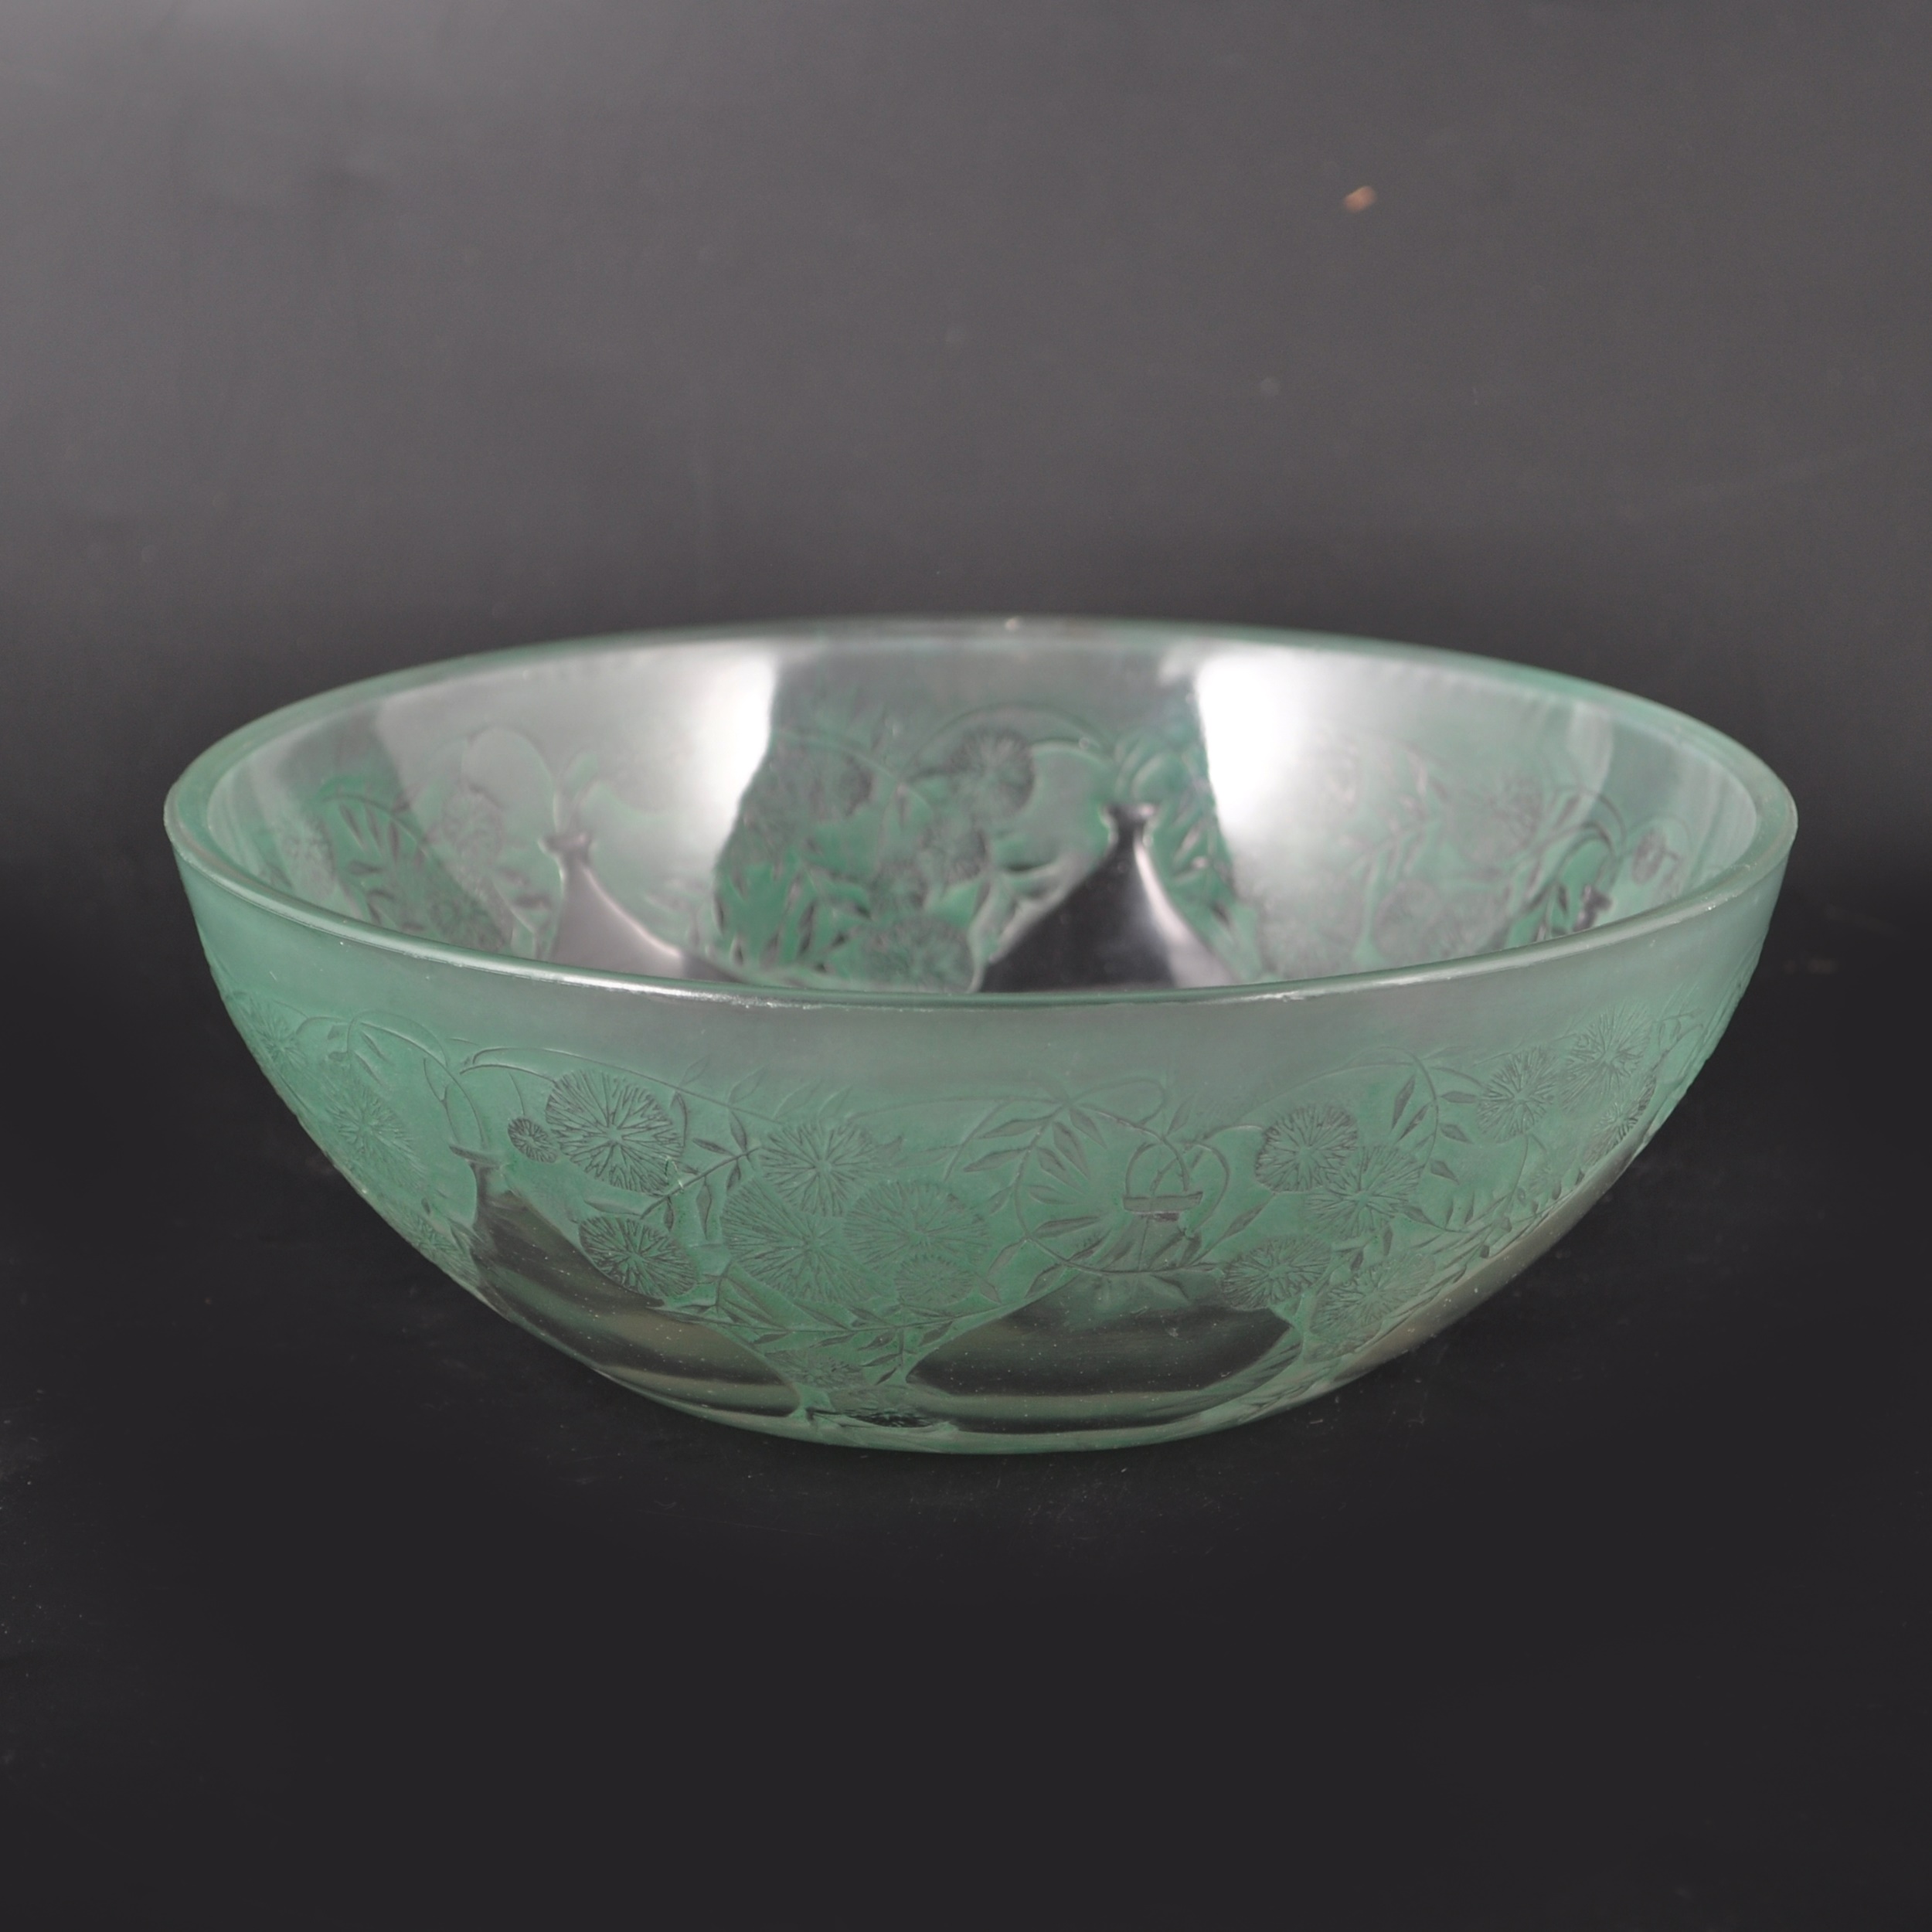 A René Lalique glass bowl, 'Vases' design, introduced 1921